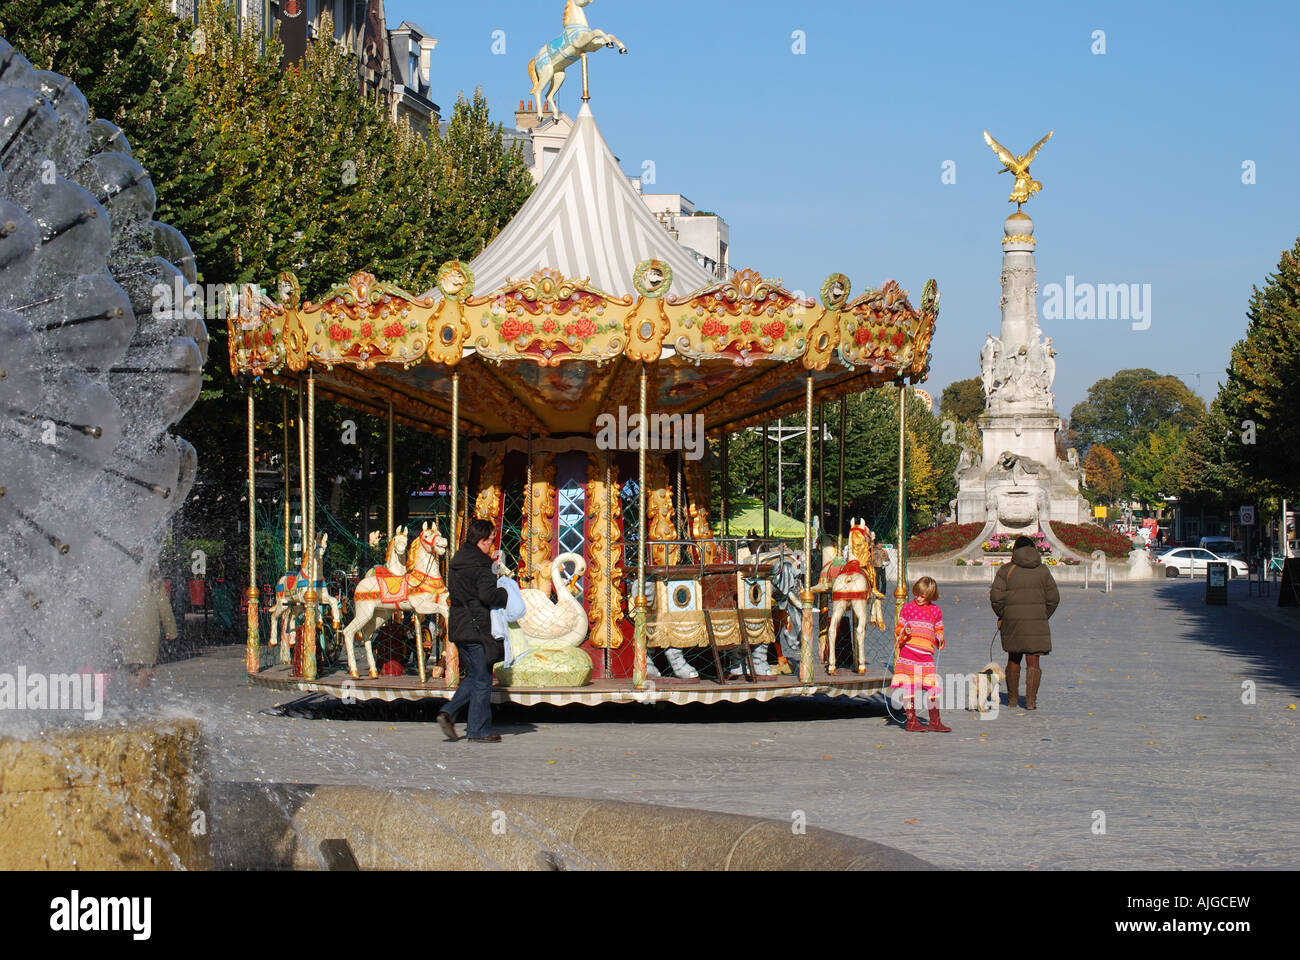 Carrousel pour enfants à la place Drouet d'Erlon, Reims, Marne, Champagne-Ardenne, France Banque D'Images